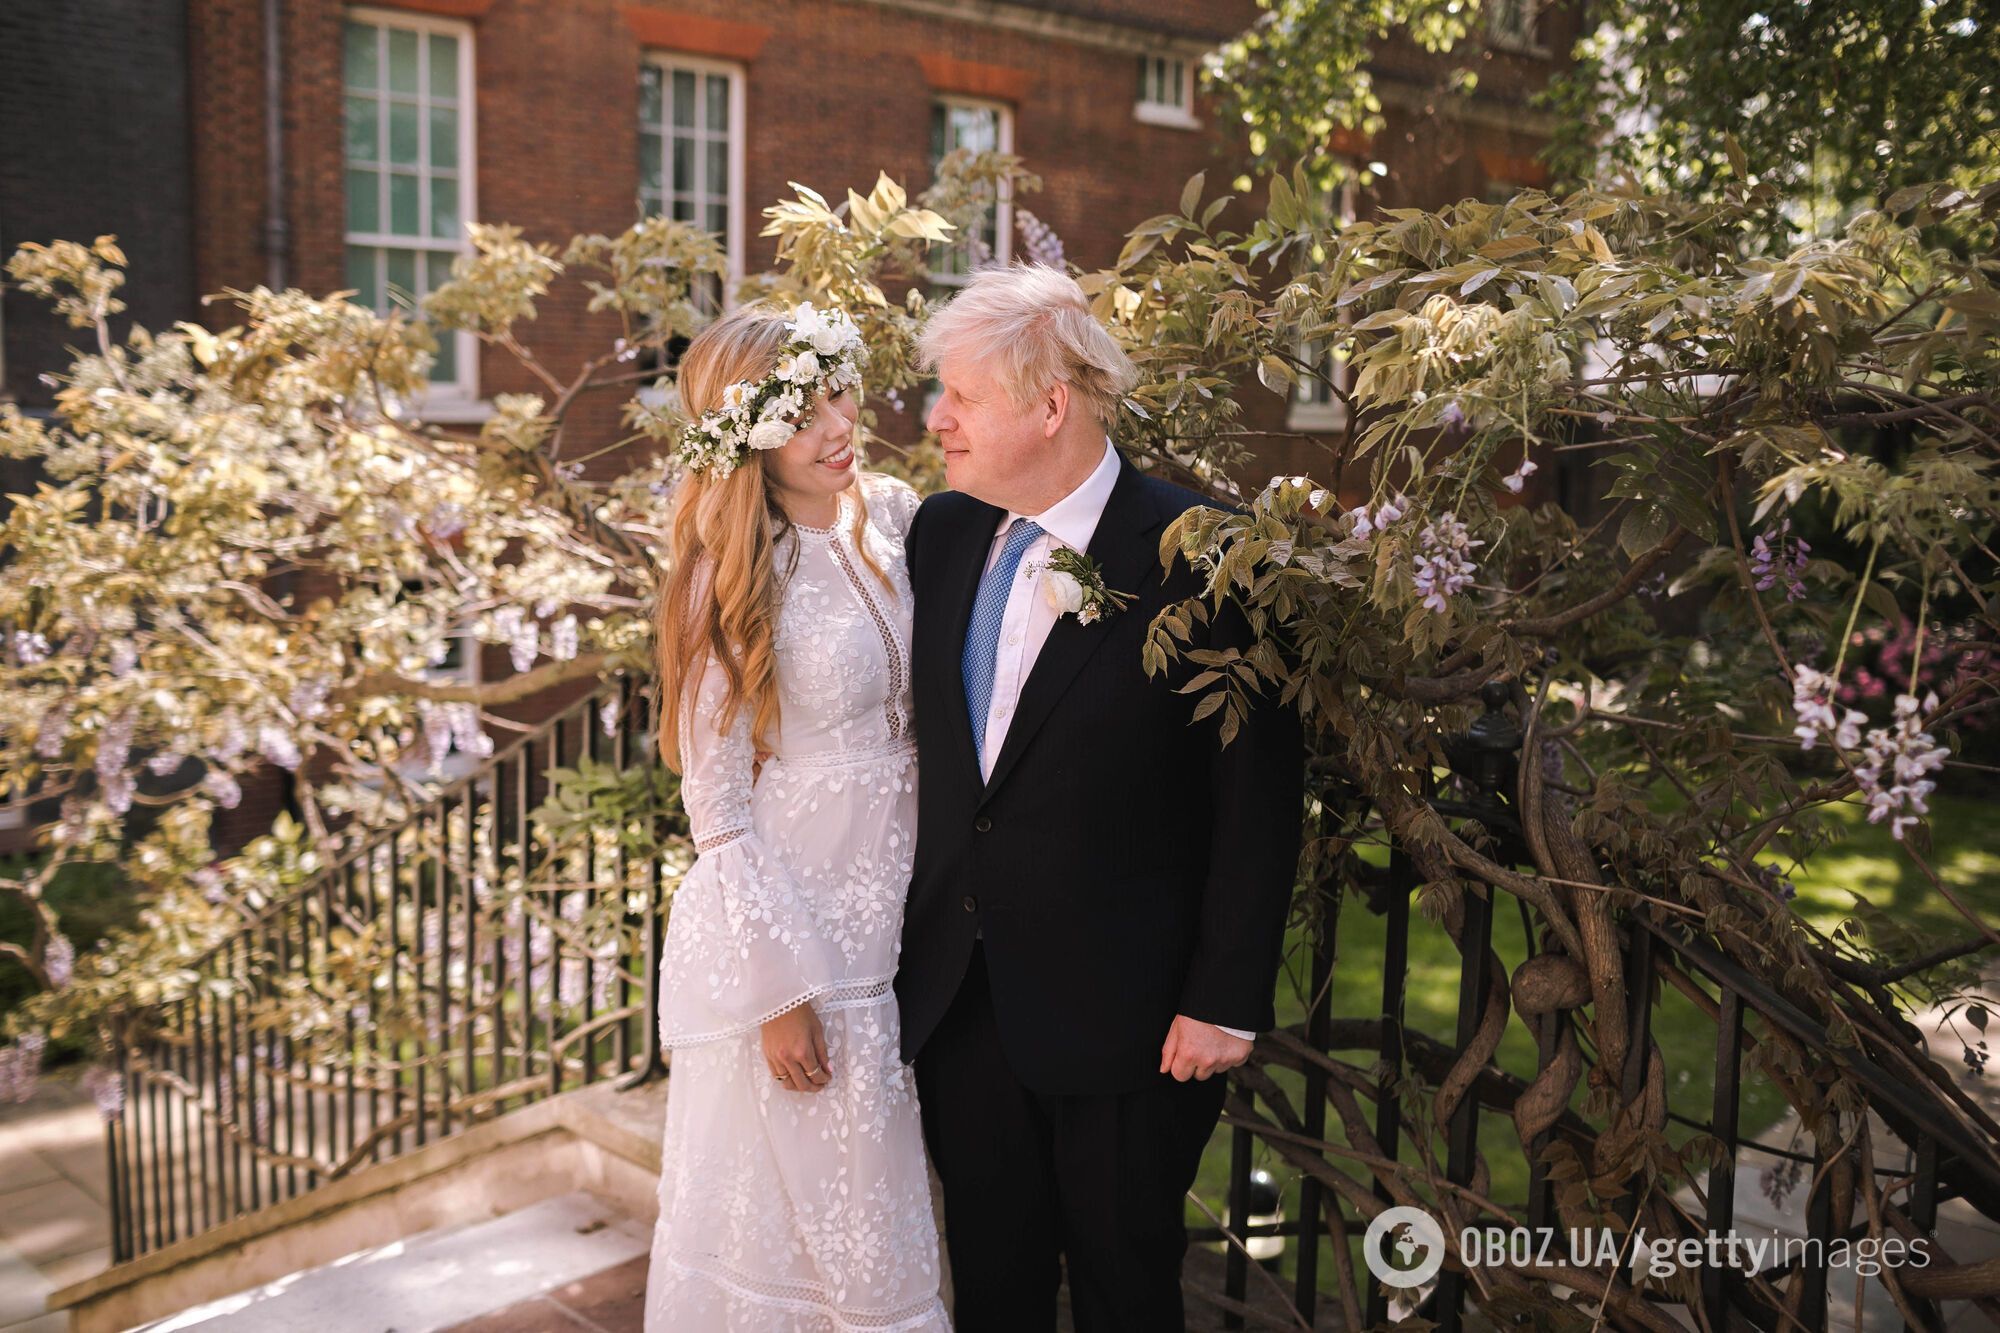 29 травня 2021 року Борис Джонсон зі своєю коханою влаштували таємне весілля